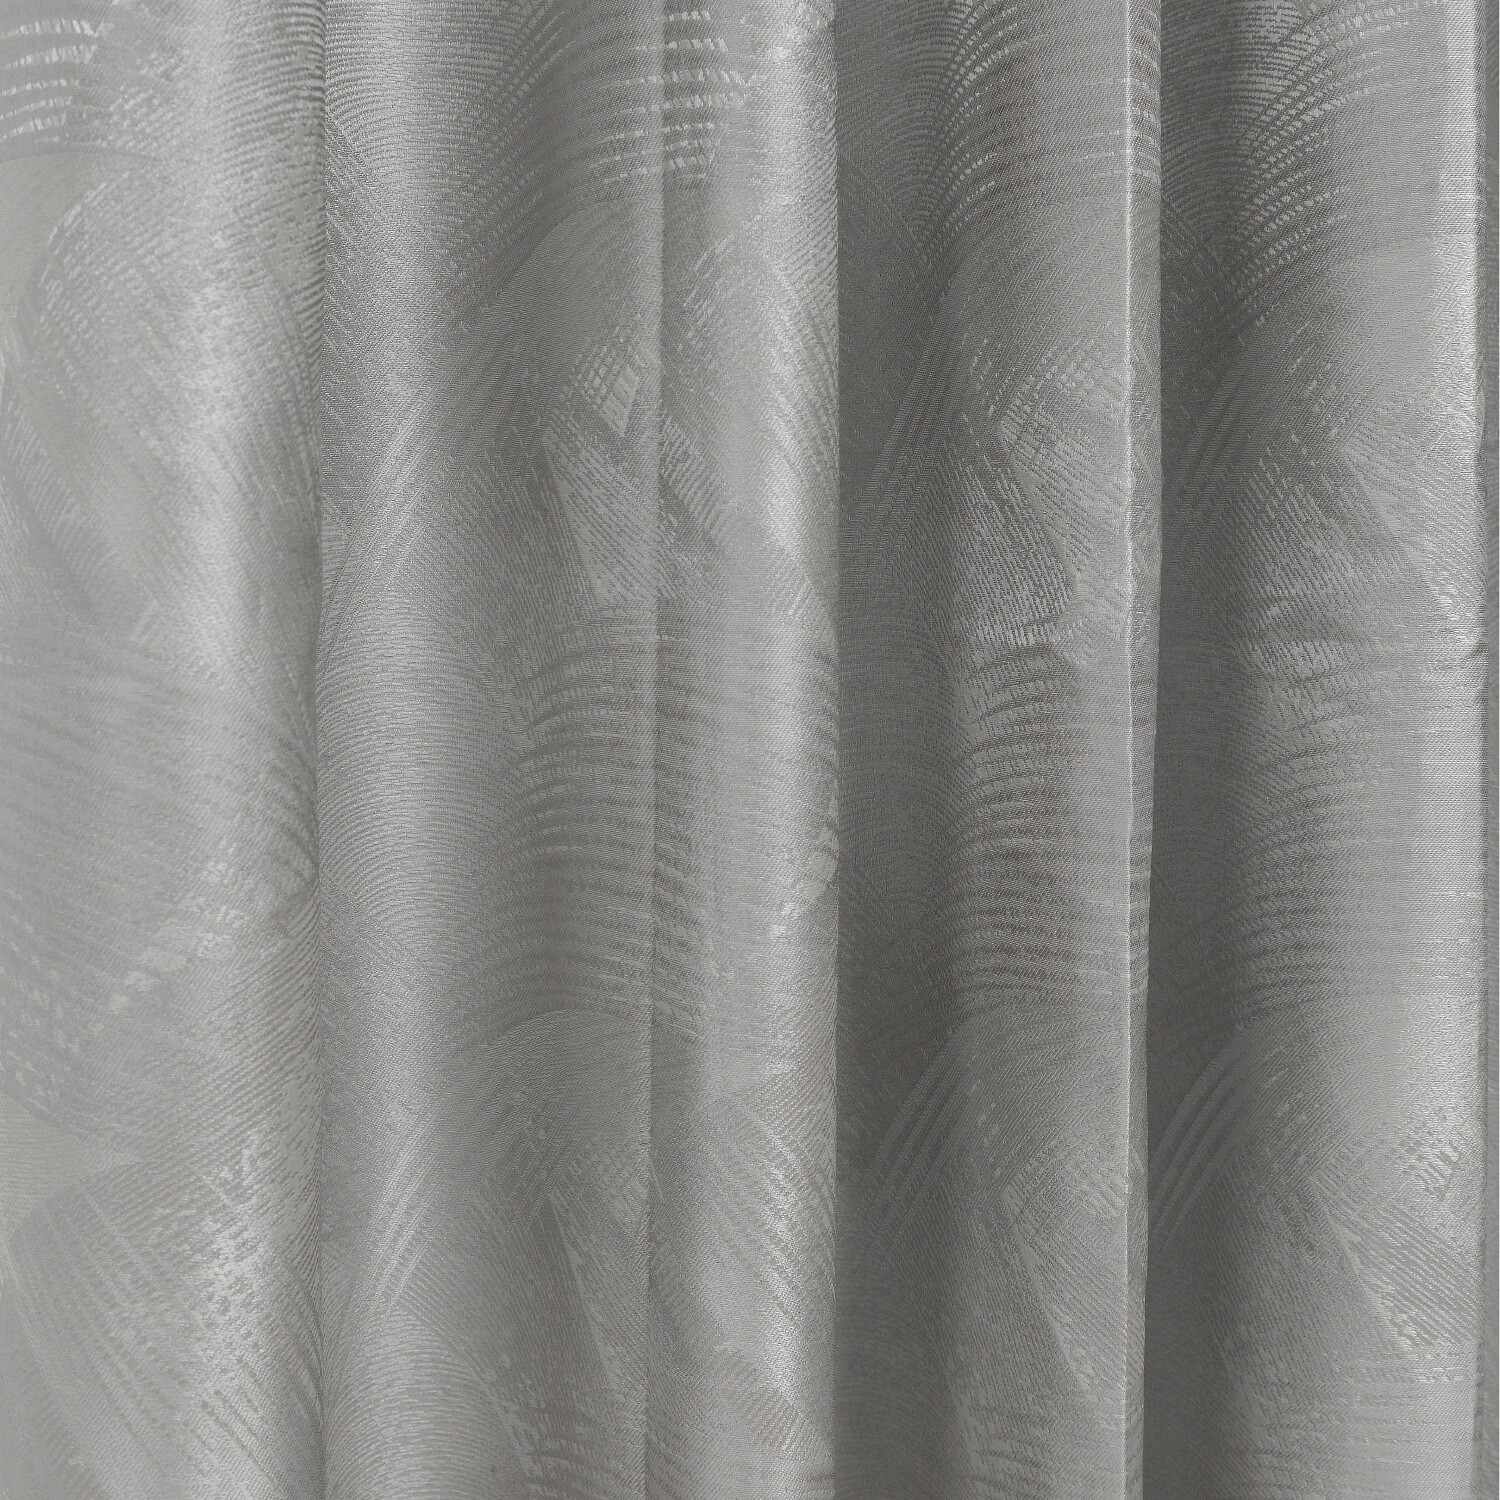 Divante Phoenix Silver Eyelet Curtains 229 x 229cm Image 3